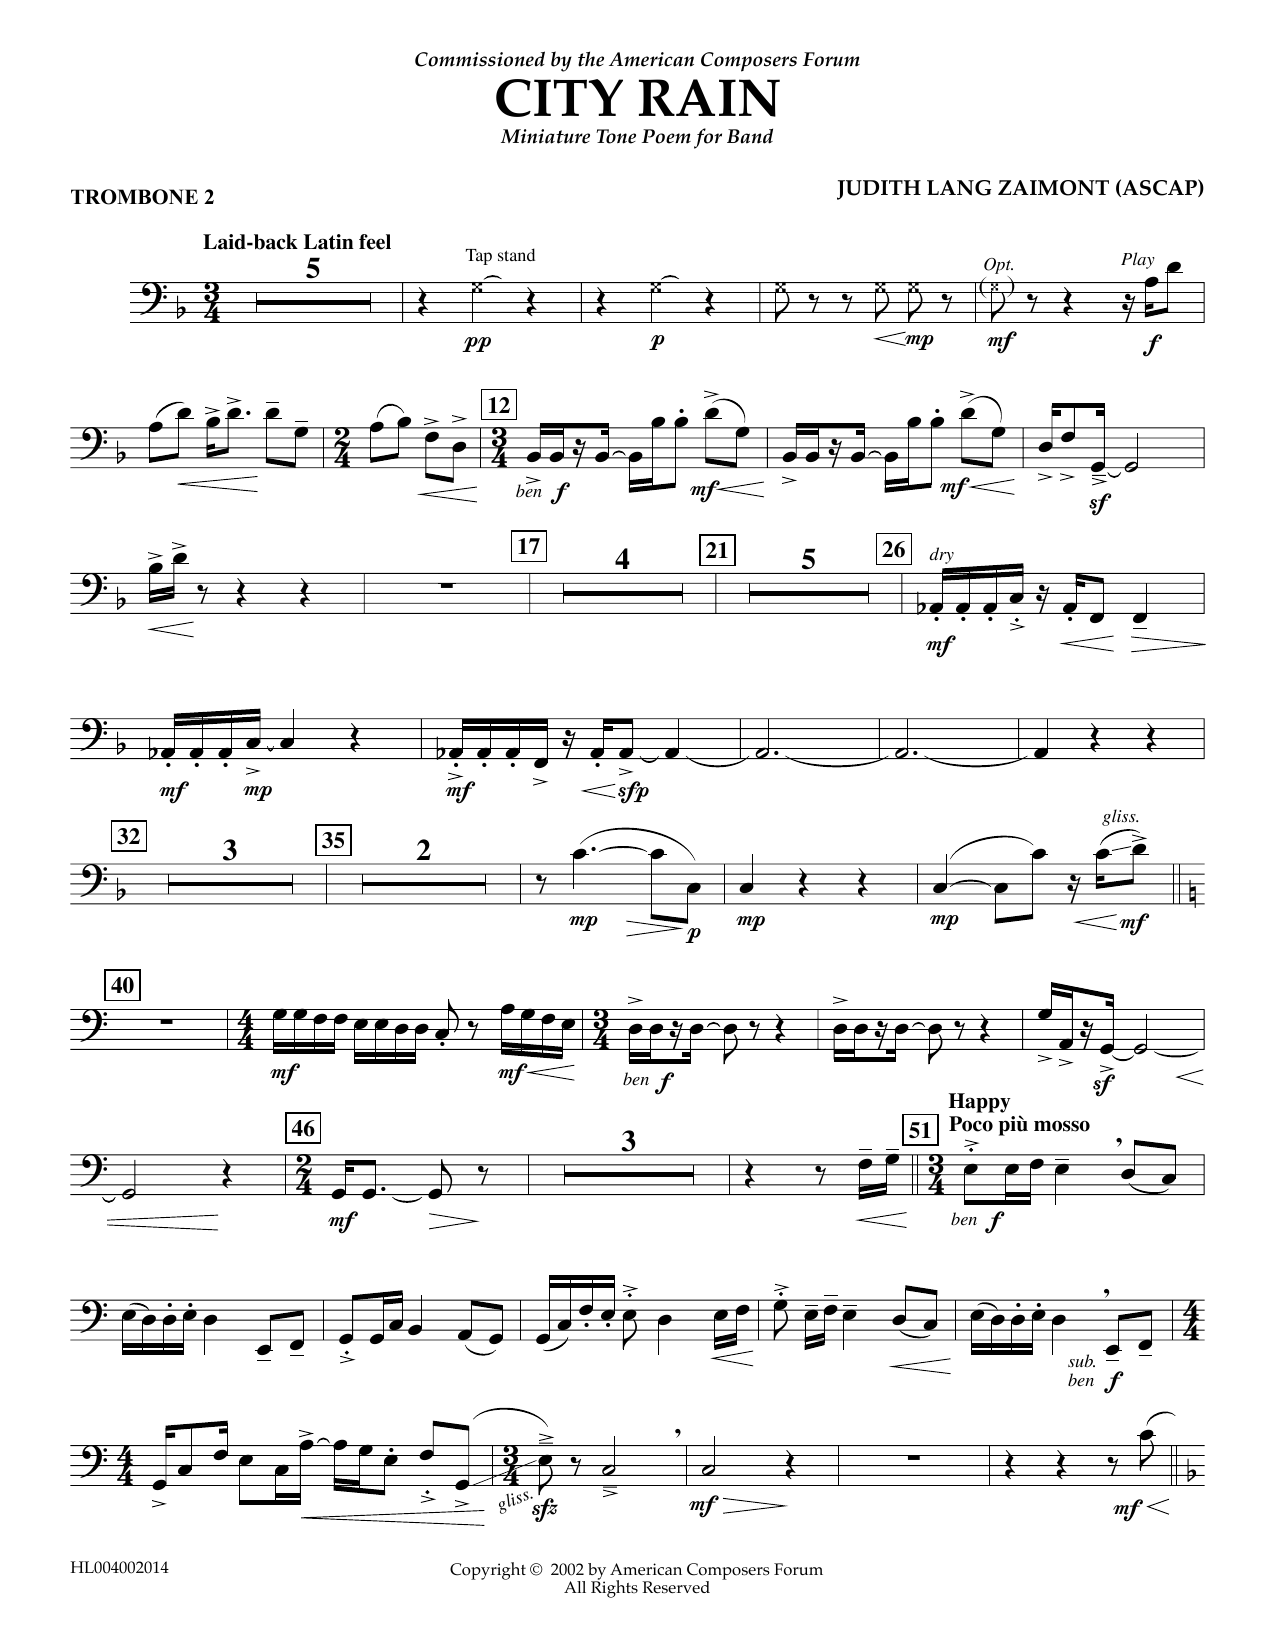 Download Judith Zaimont City Rain - Trombone 2 Sheet Music